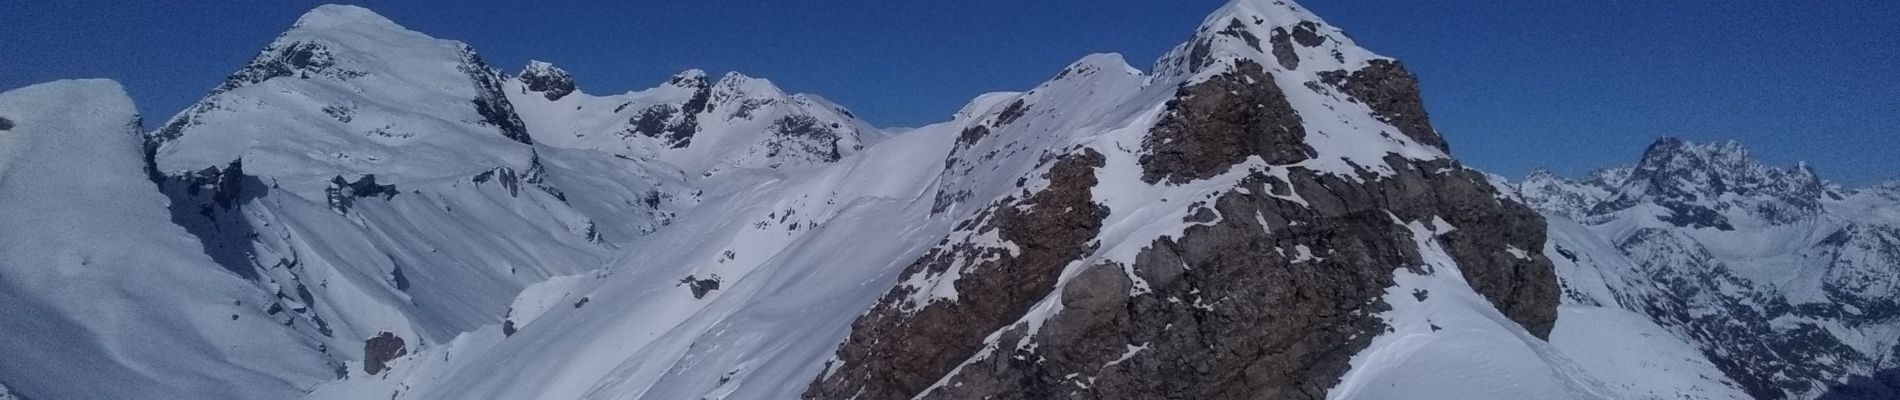 Percorso Sci alpinismo Saint-Jean-Saint-Nicolas - Soleil boeuf et petite remontée à Prouveyrat - Photo